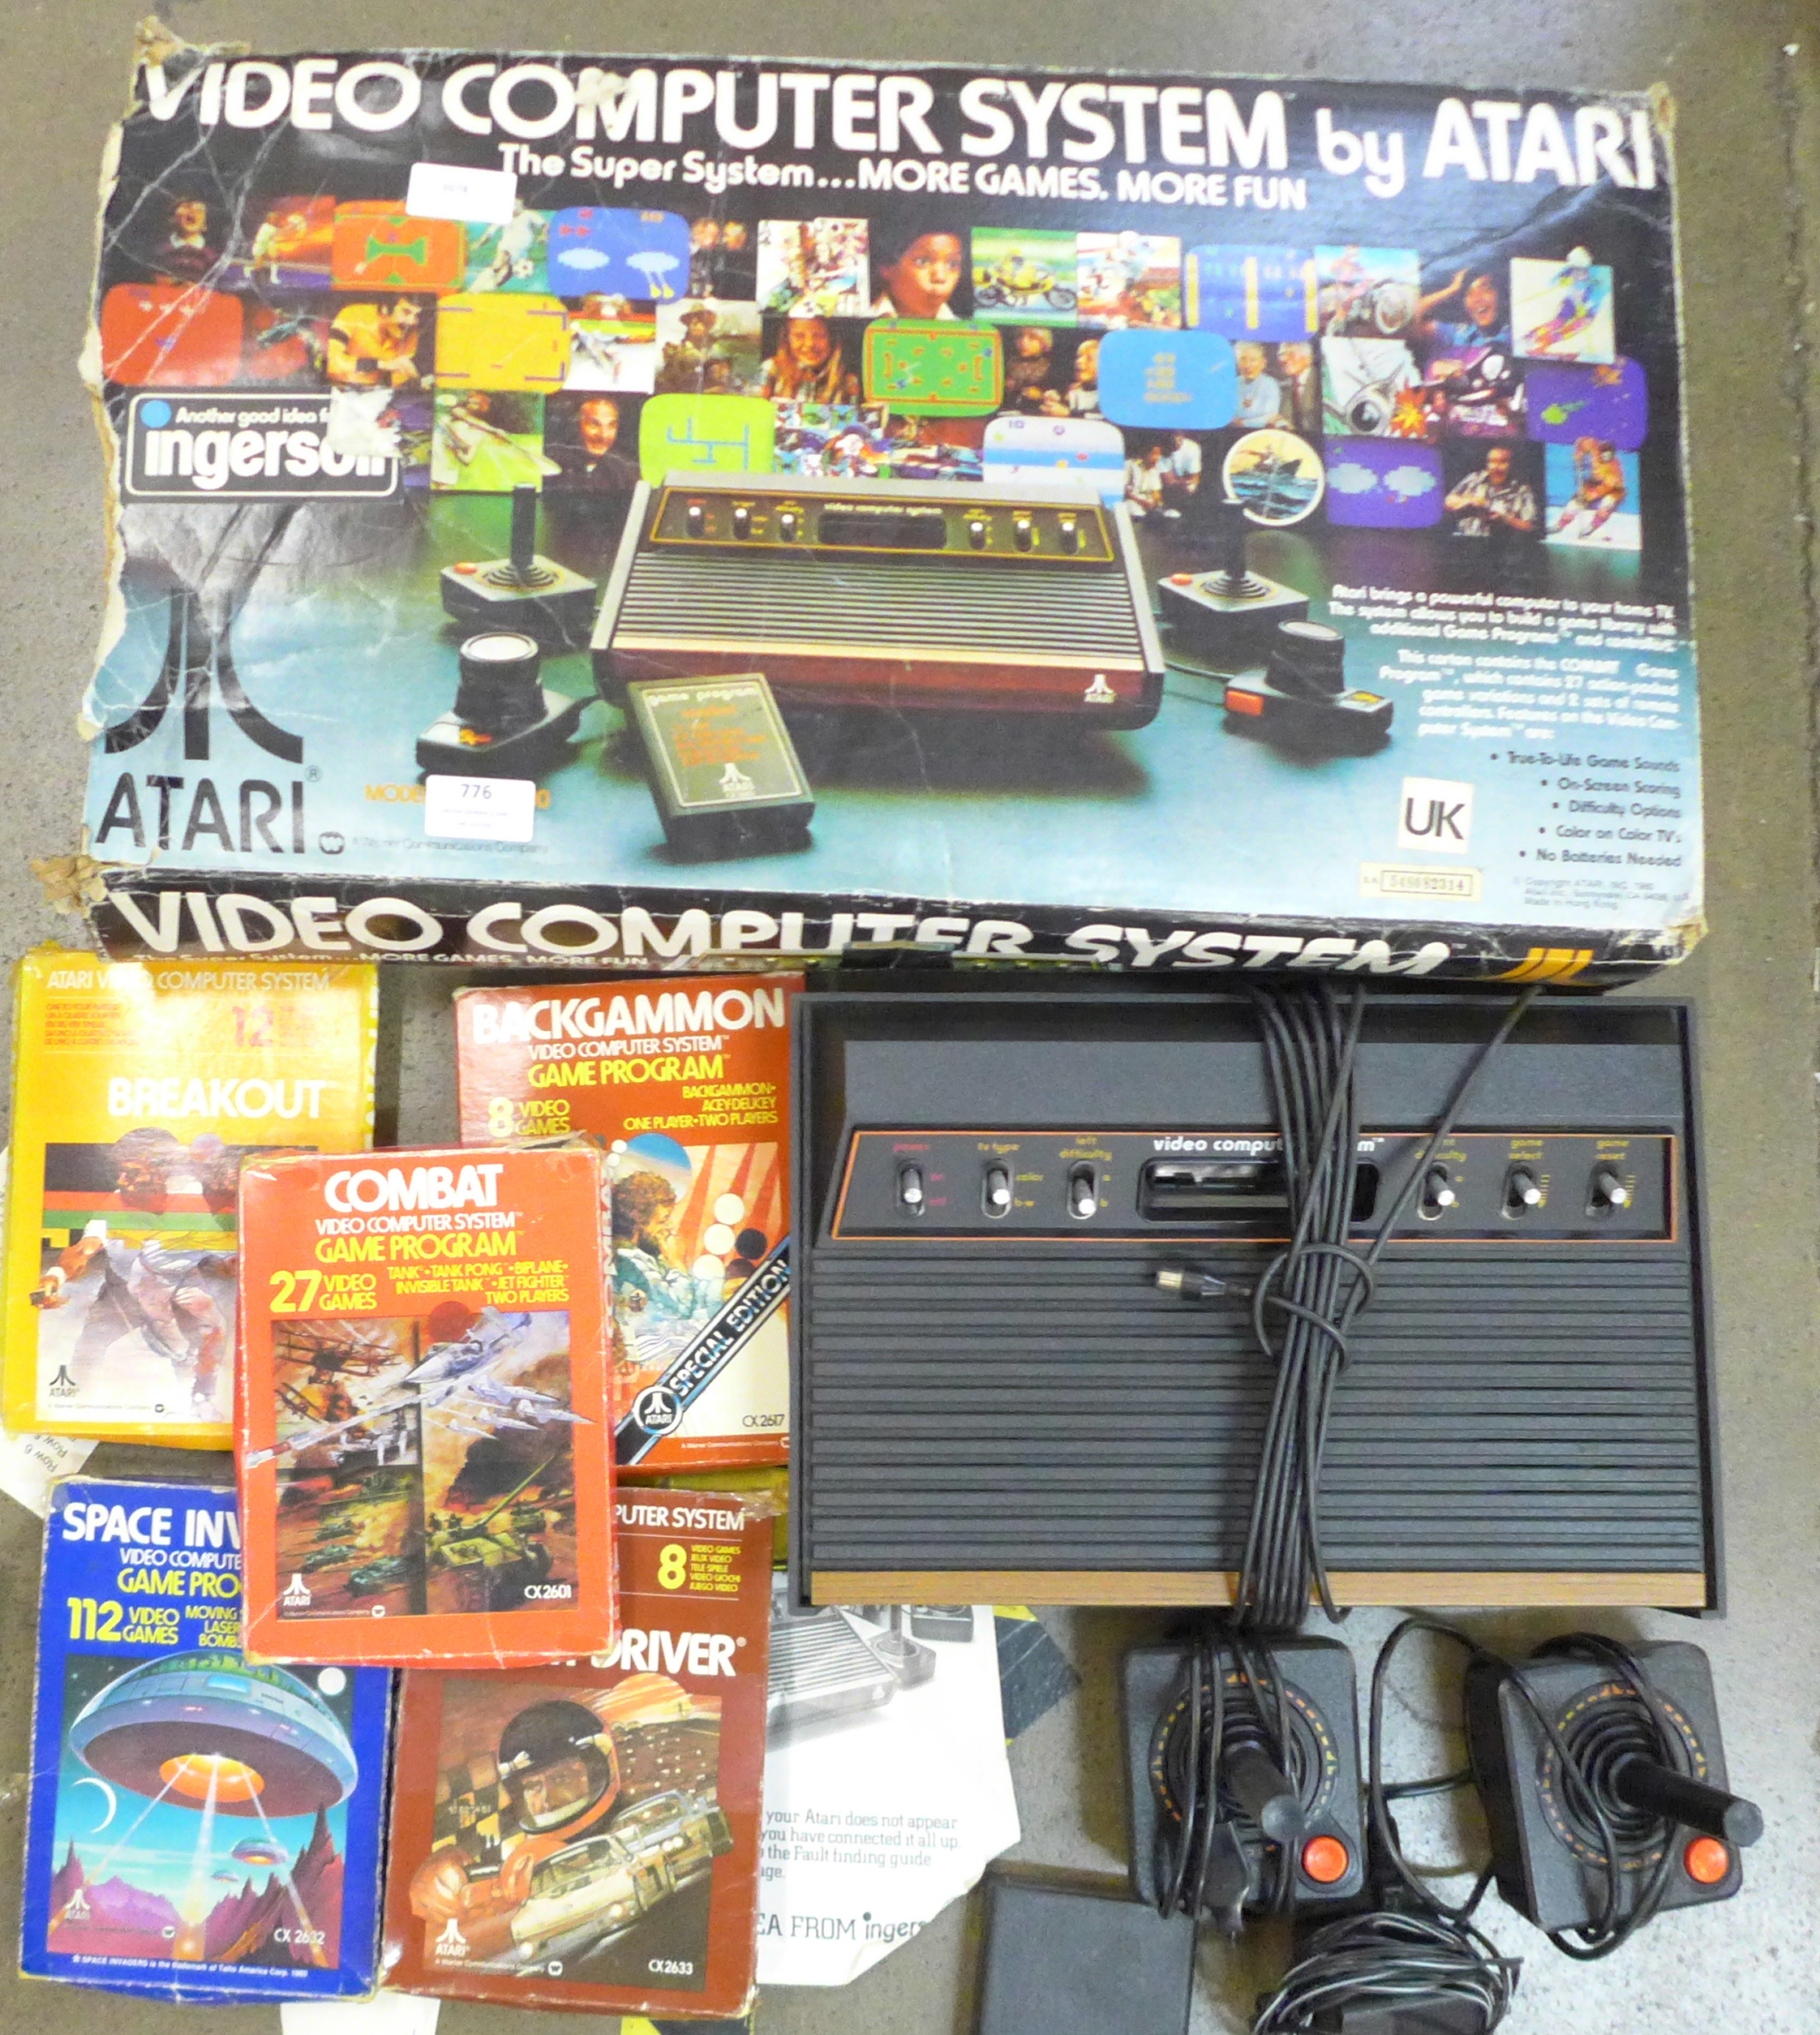 An Atari video computer system